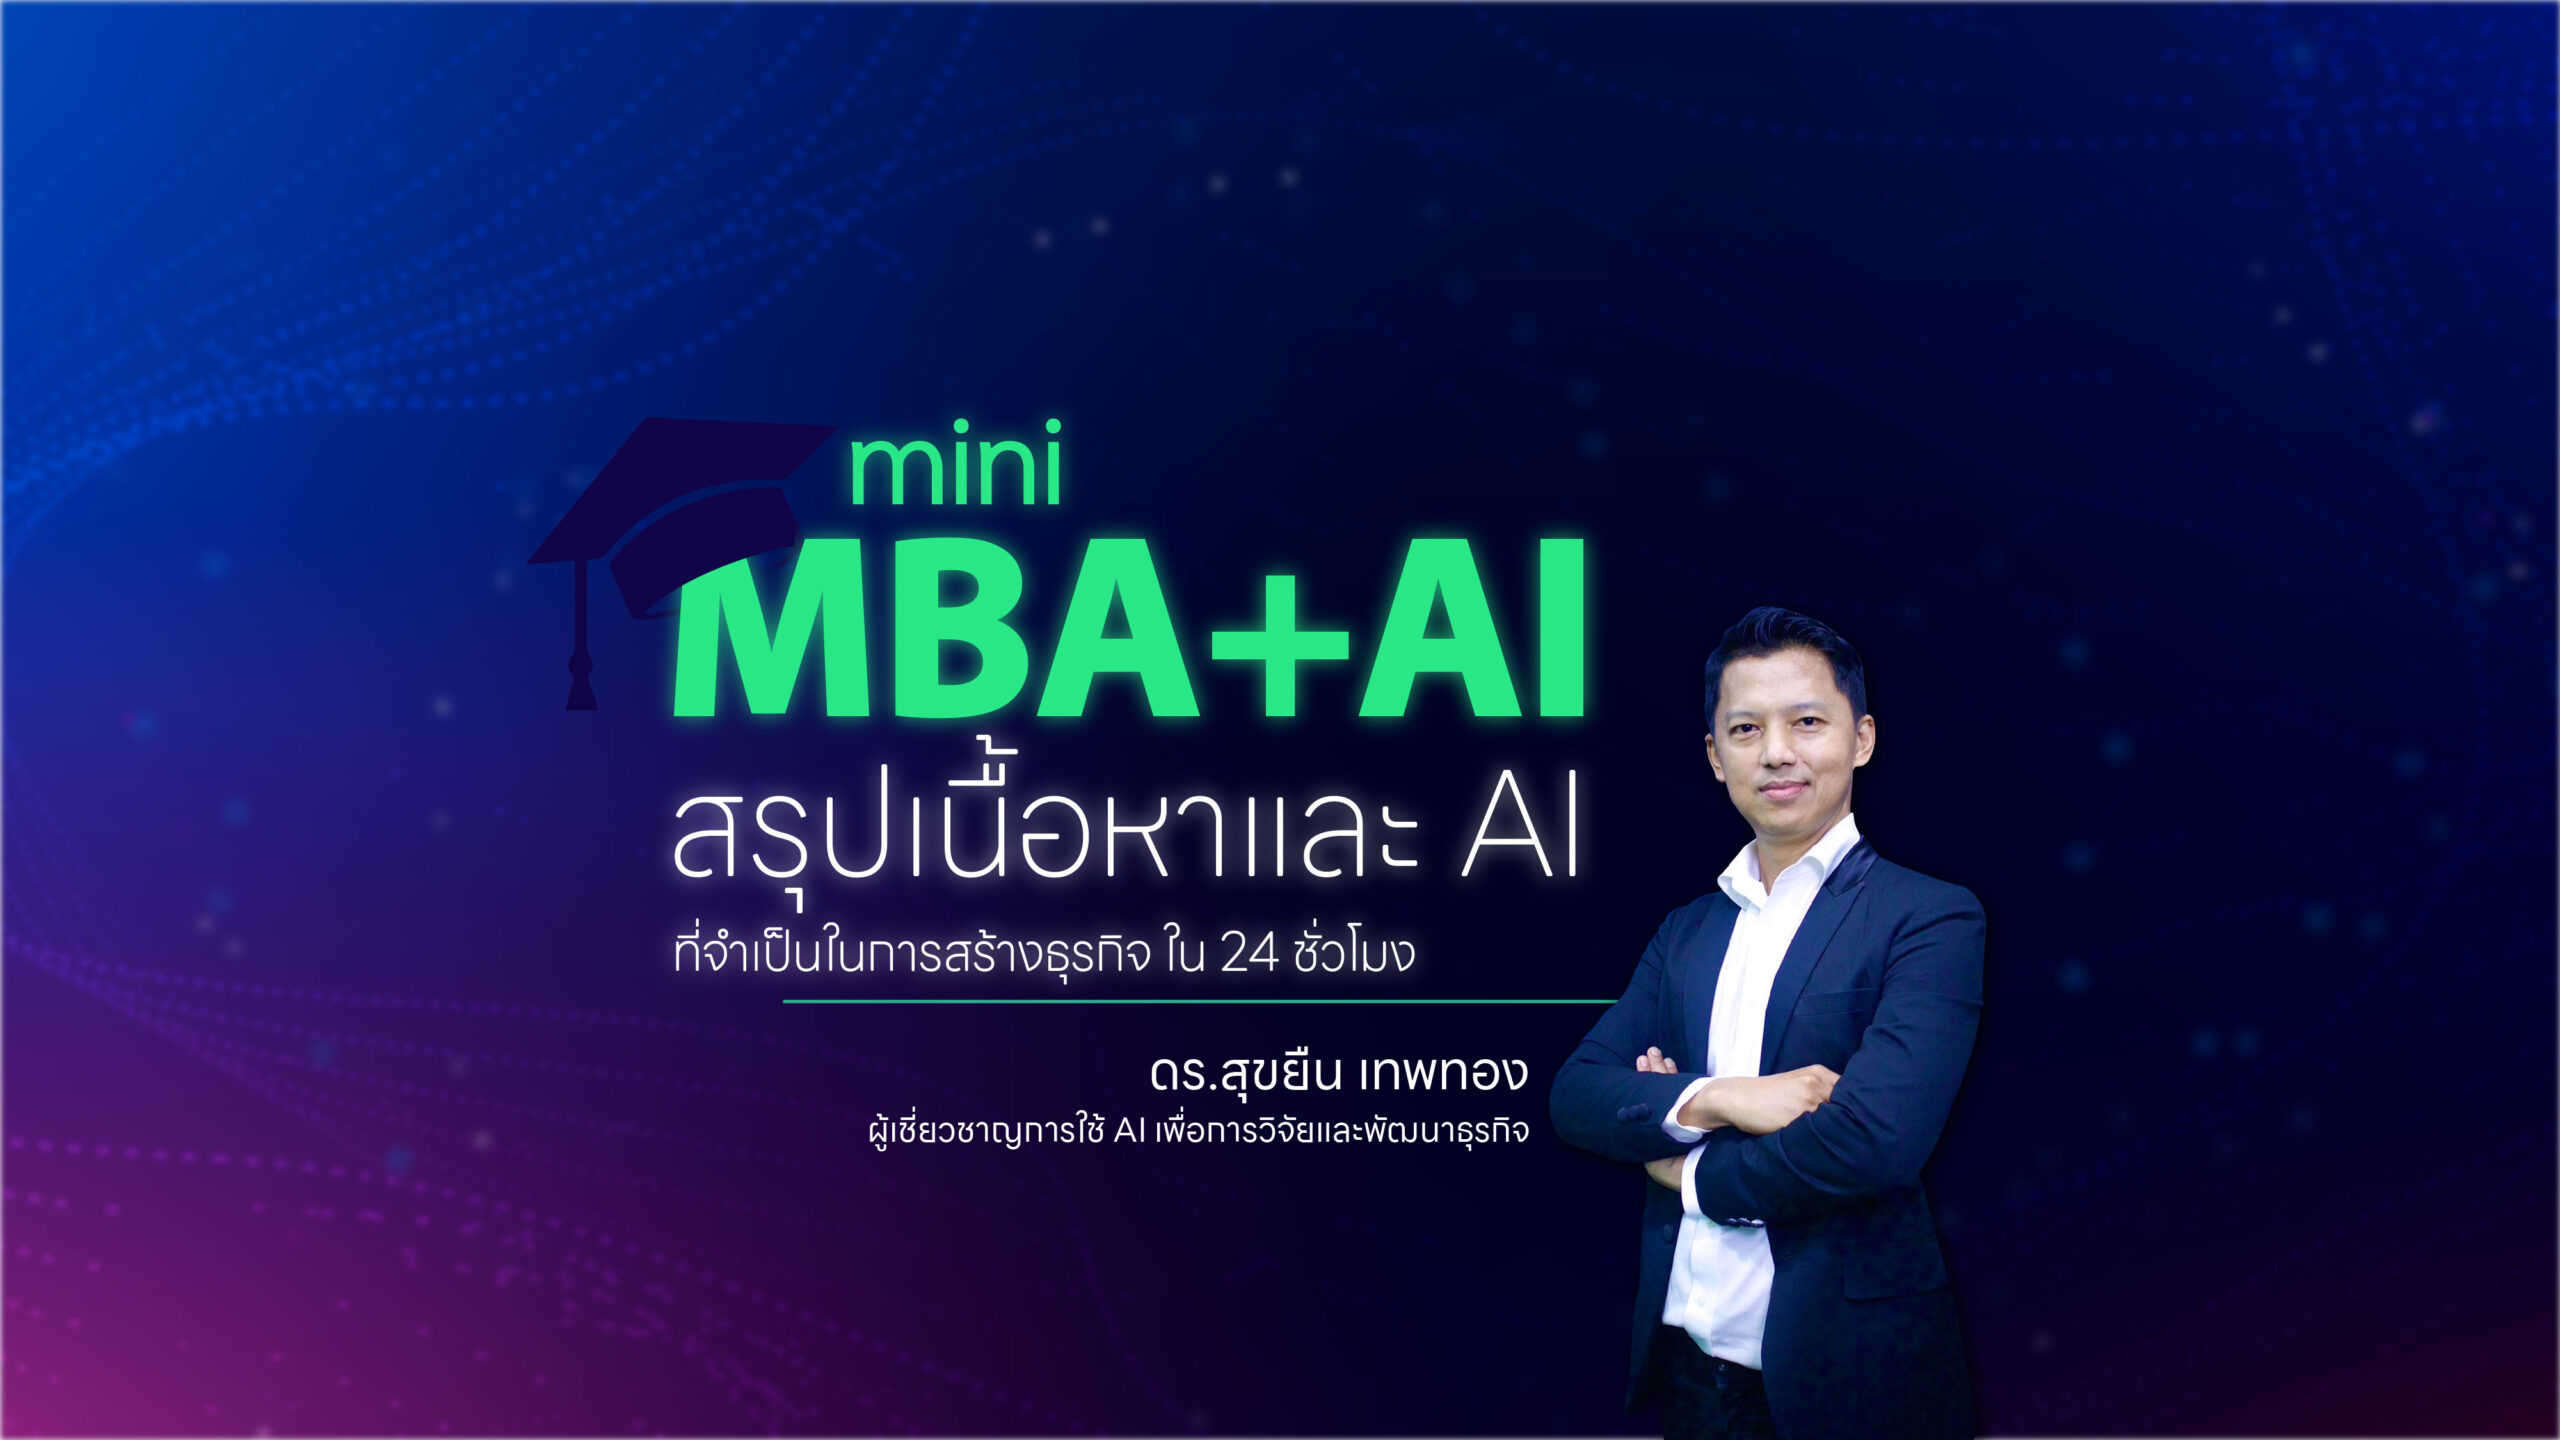 mini MBA+AI”: สรุปเนื้อหาและ AI ที่จำเป็นในการสร้างธุรกิจ ใน 24 ชั่วโมง